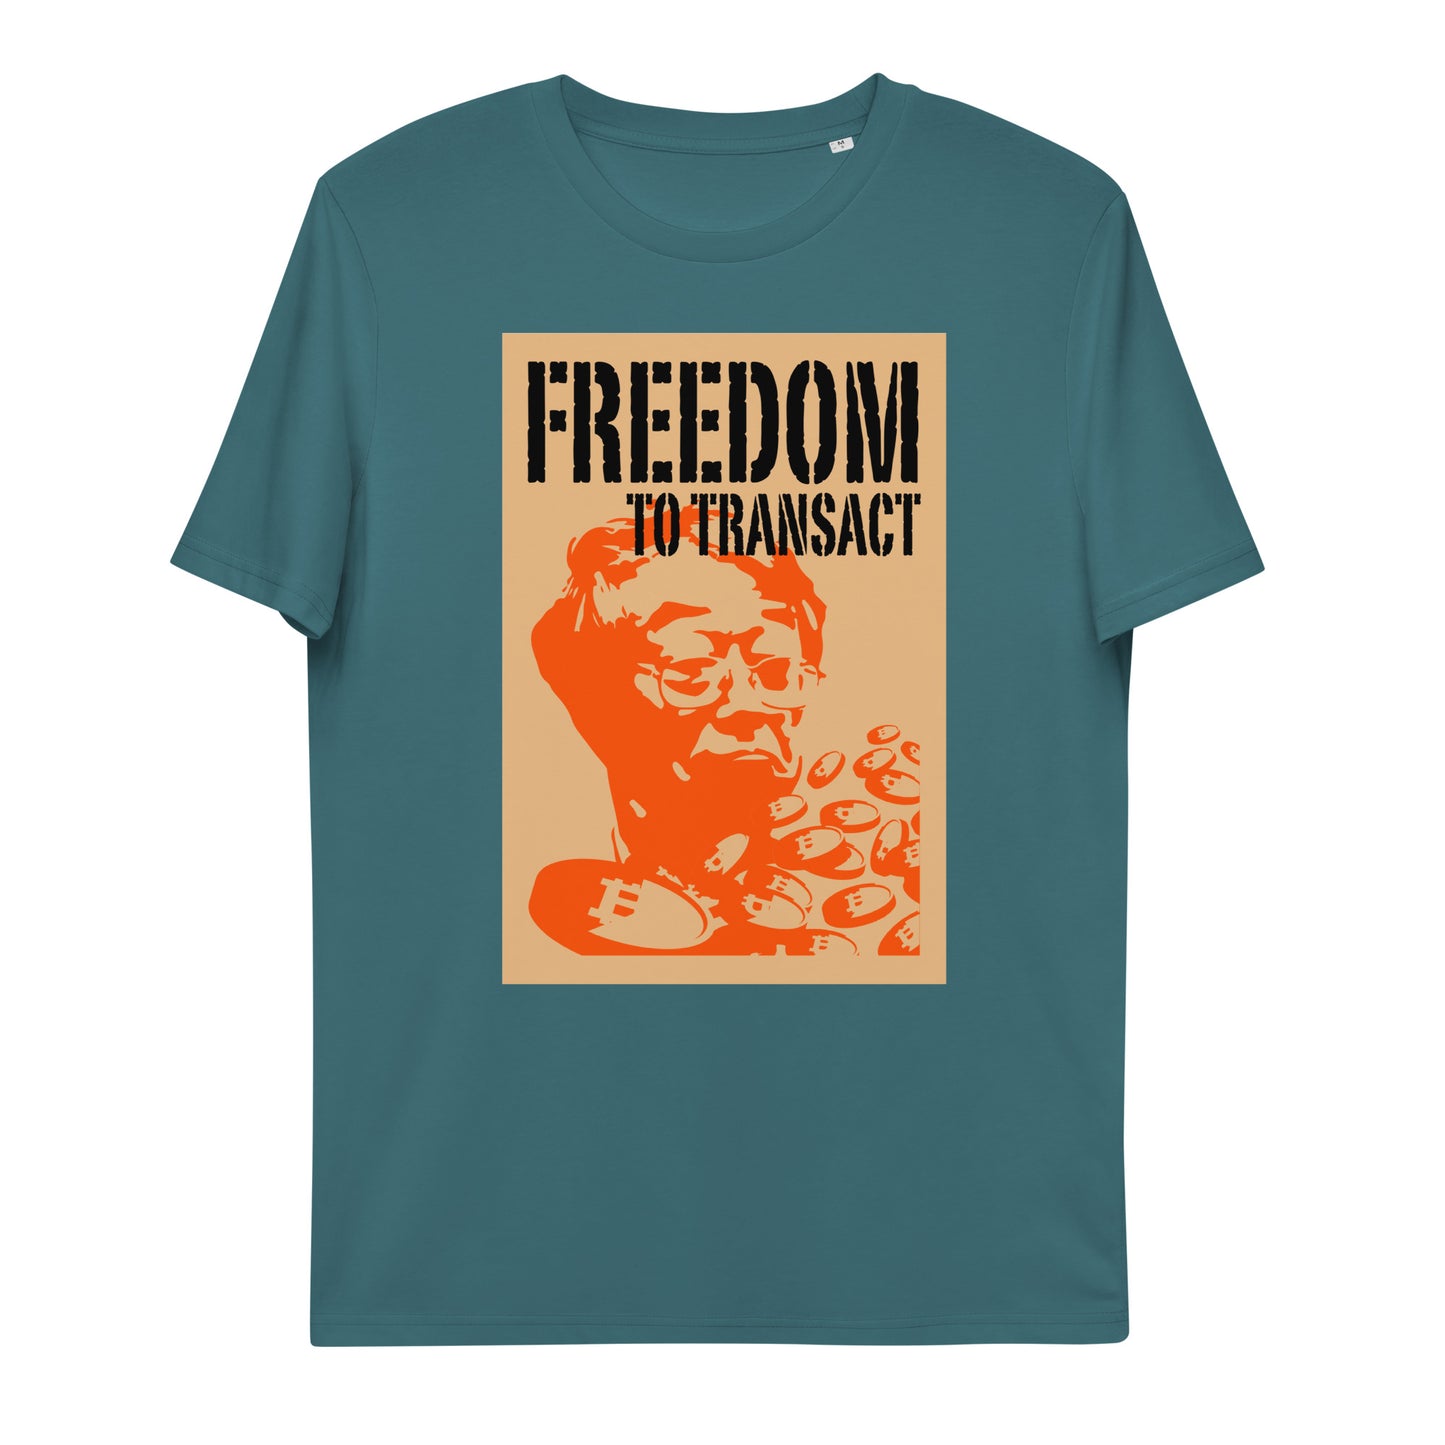 nakamoto-freedom-t-shirt-stargazer